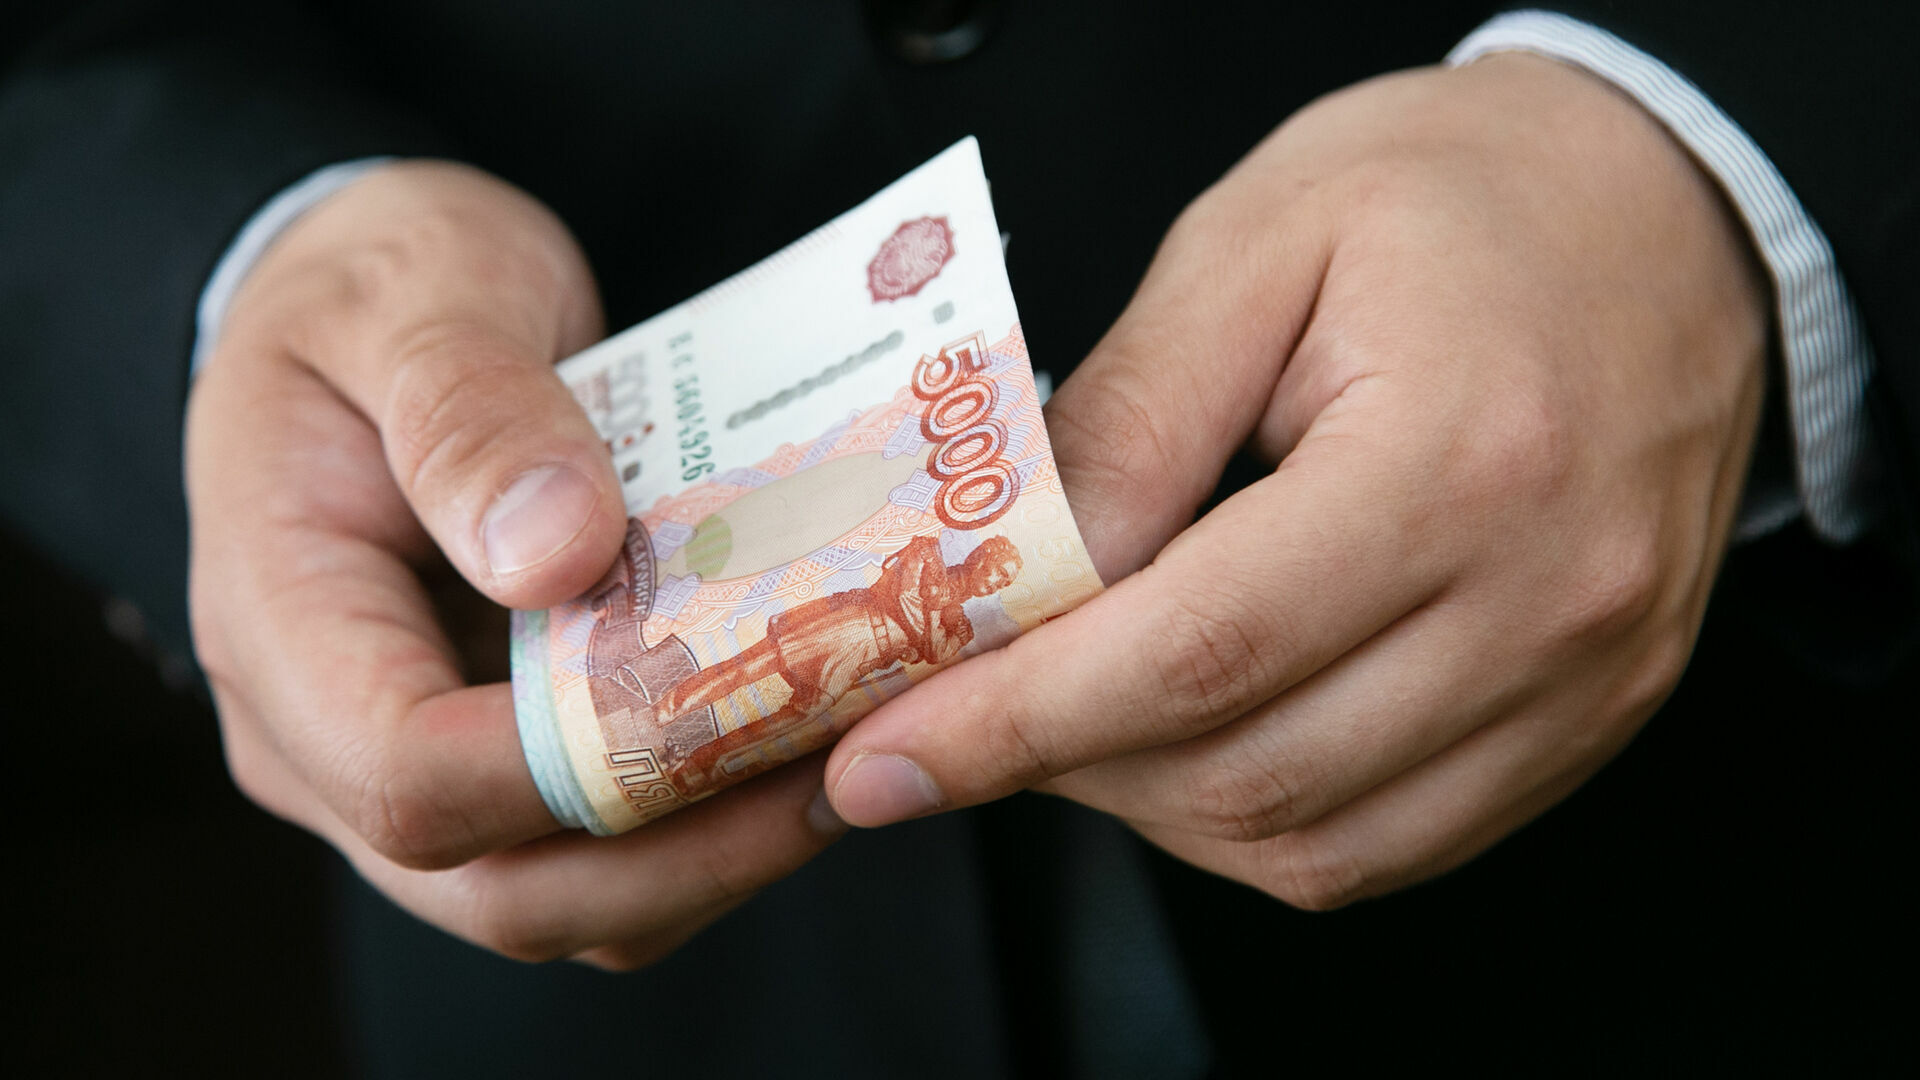 Мужчина хотел вызвать проституток, а нарвался на мошенников в Нижегородской области